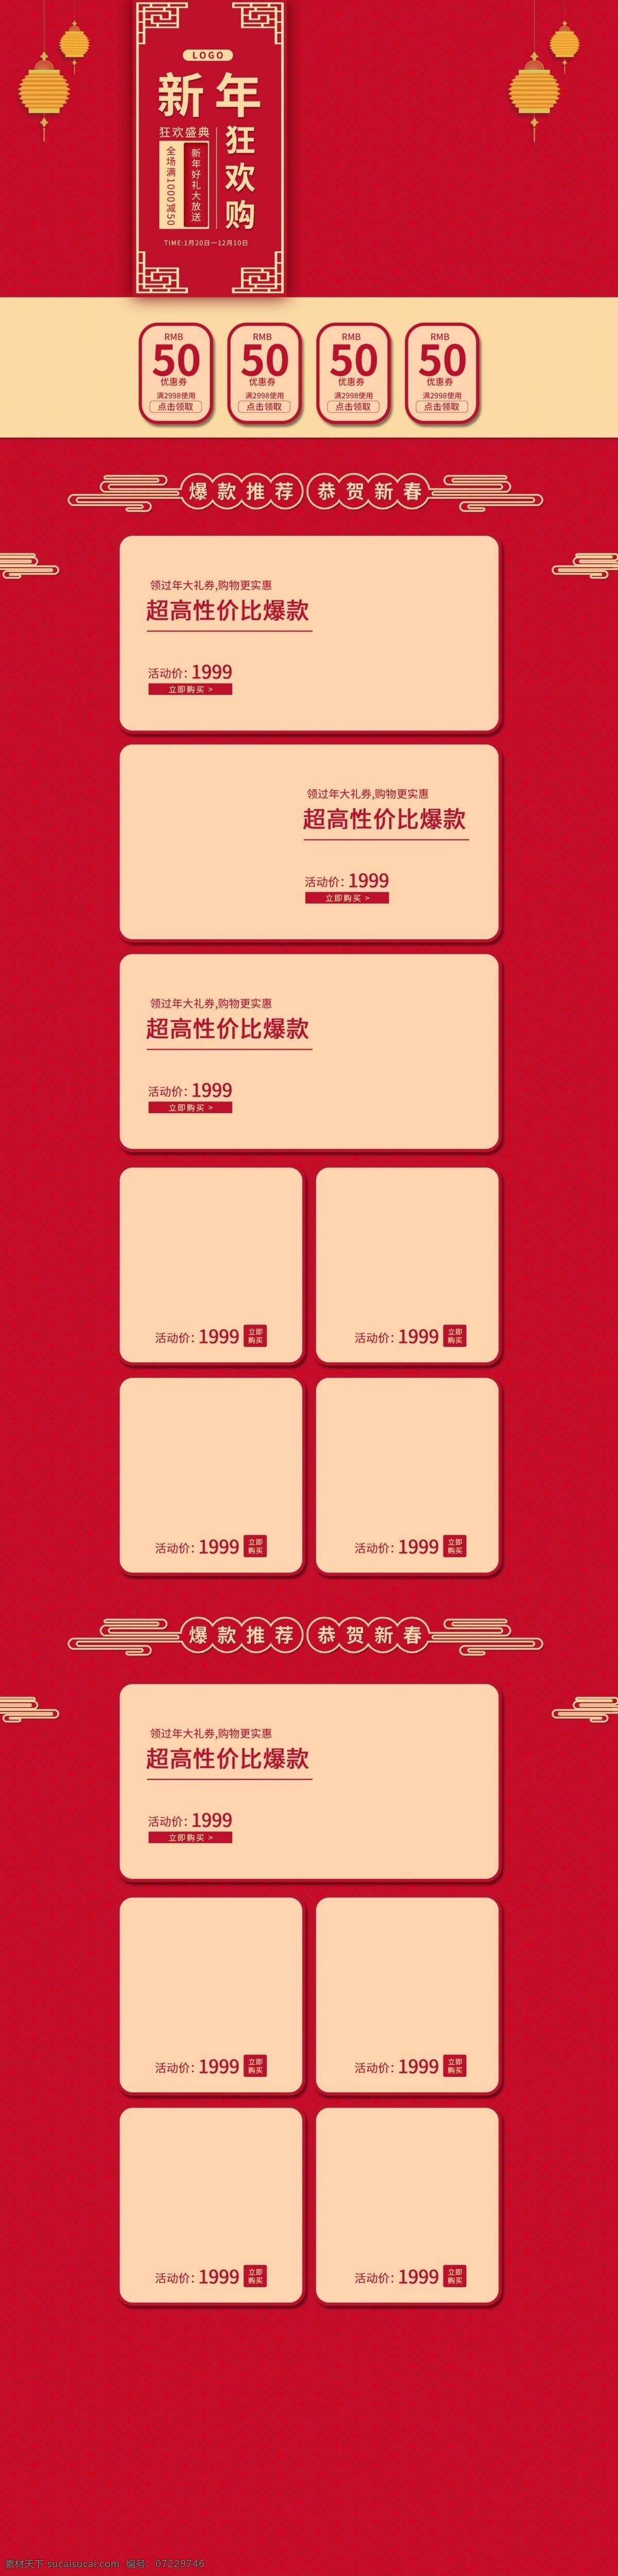 天猫 活动 彩妆 新年 限量 版 首页 简约 中国风 限量版